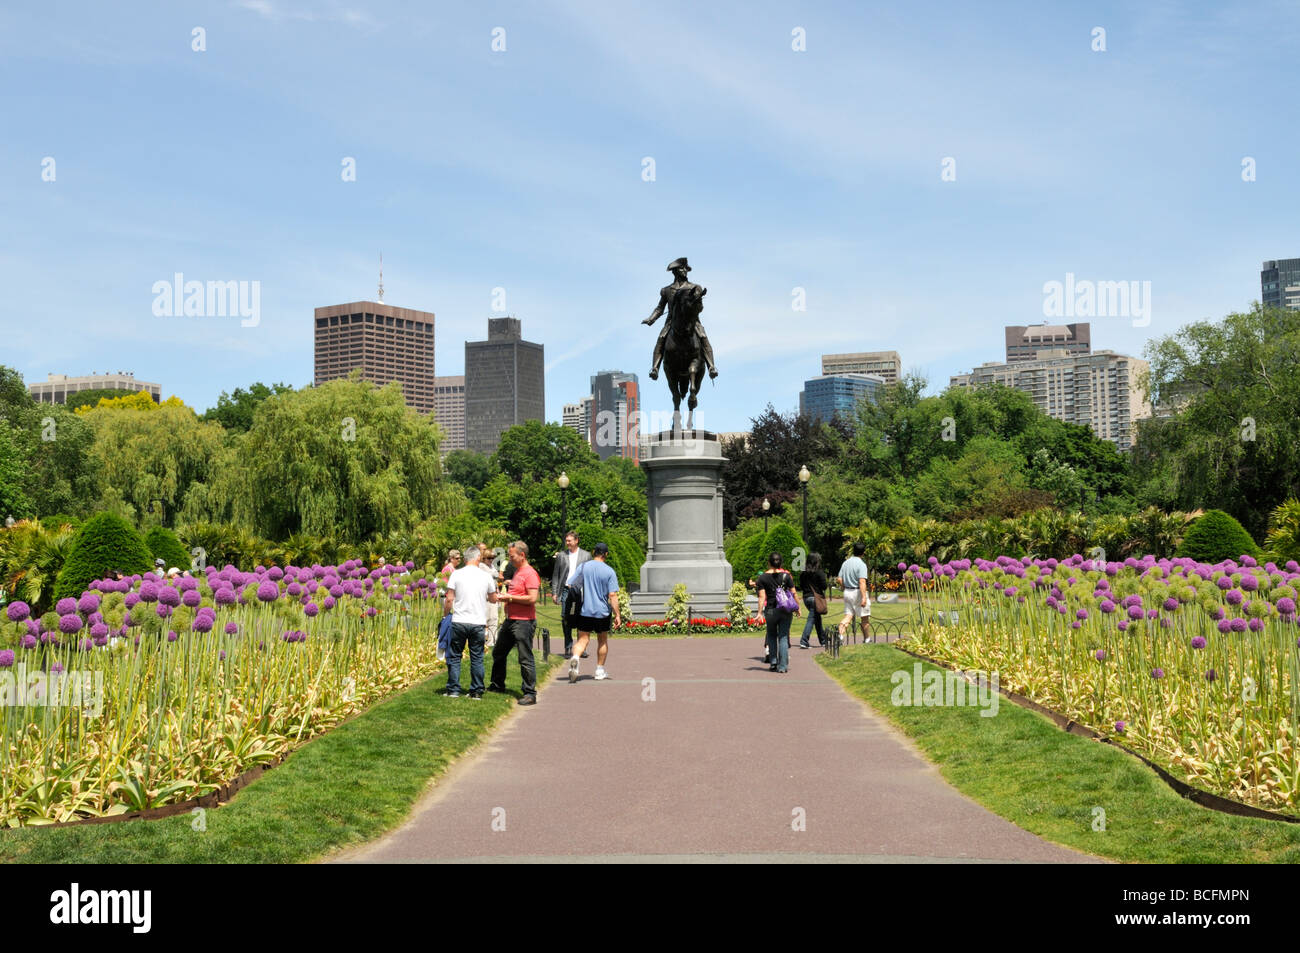 Dans les jardins publics à côté de Boston floraison commun Allium géant menant à statue de George Washington avec des toits de la ville Banque D'Images